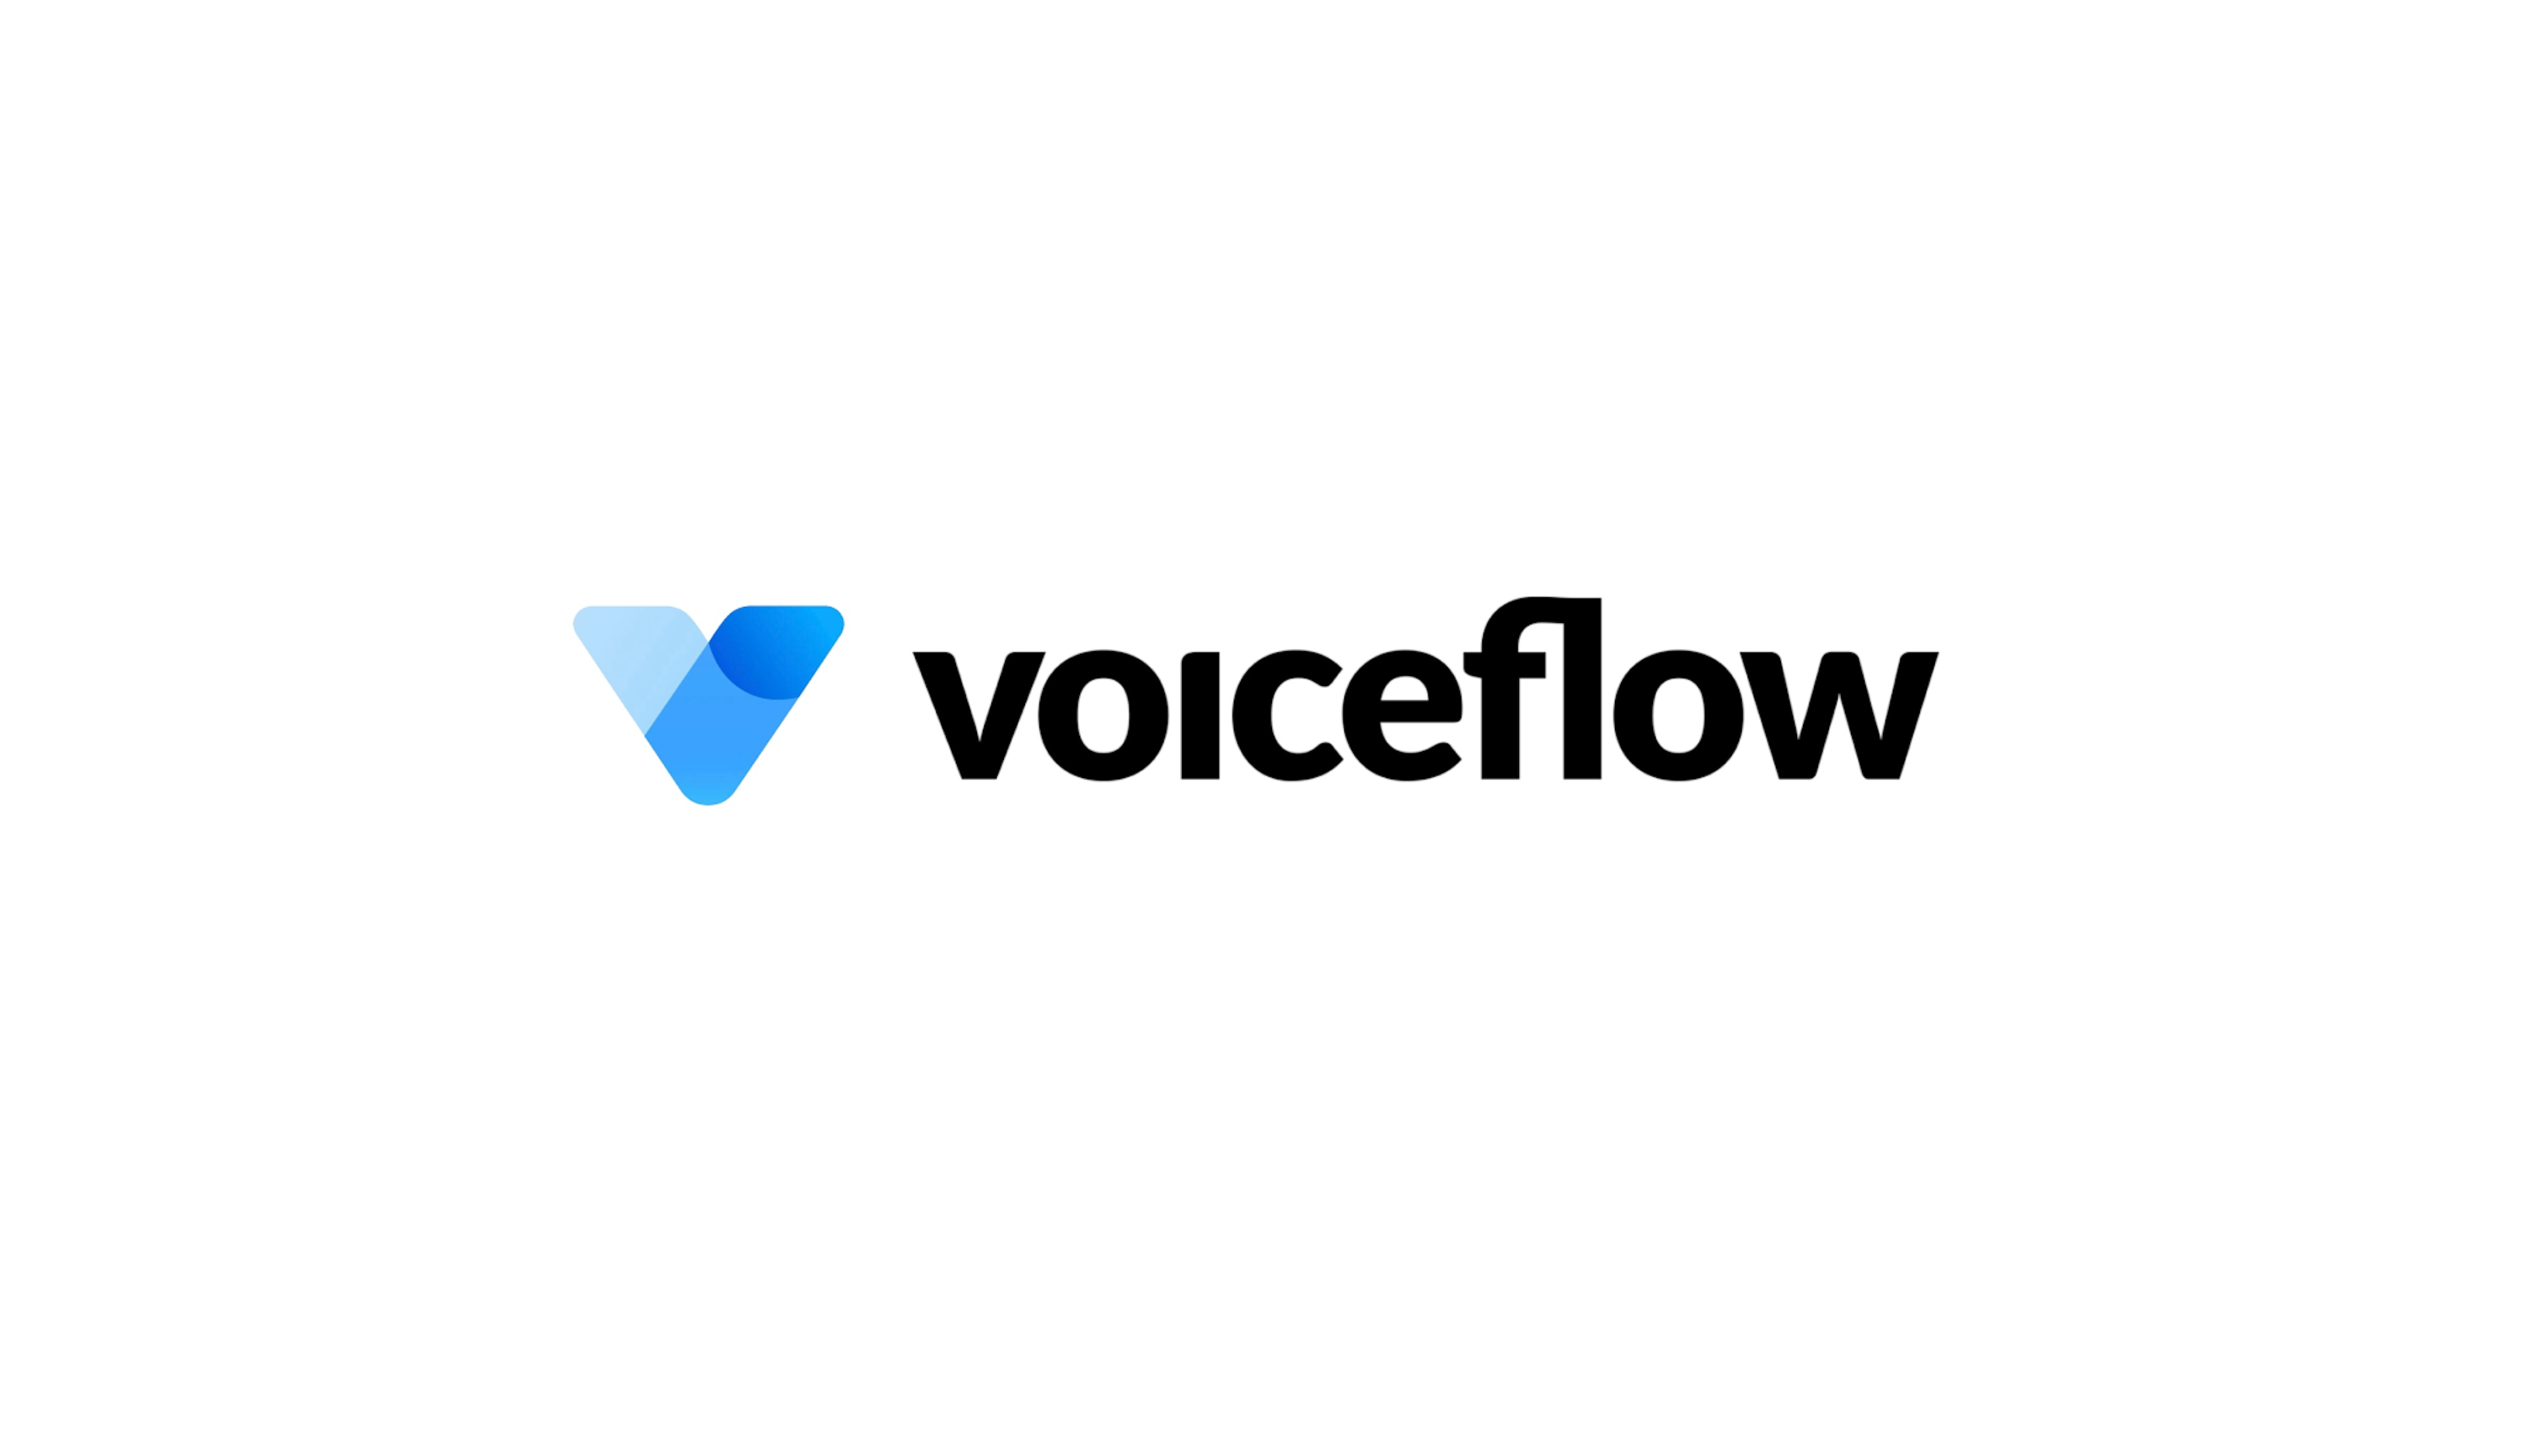 Voiceflow old logo